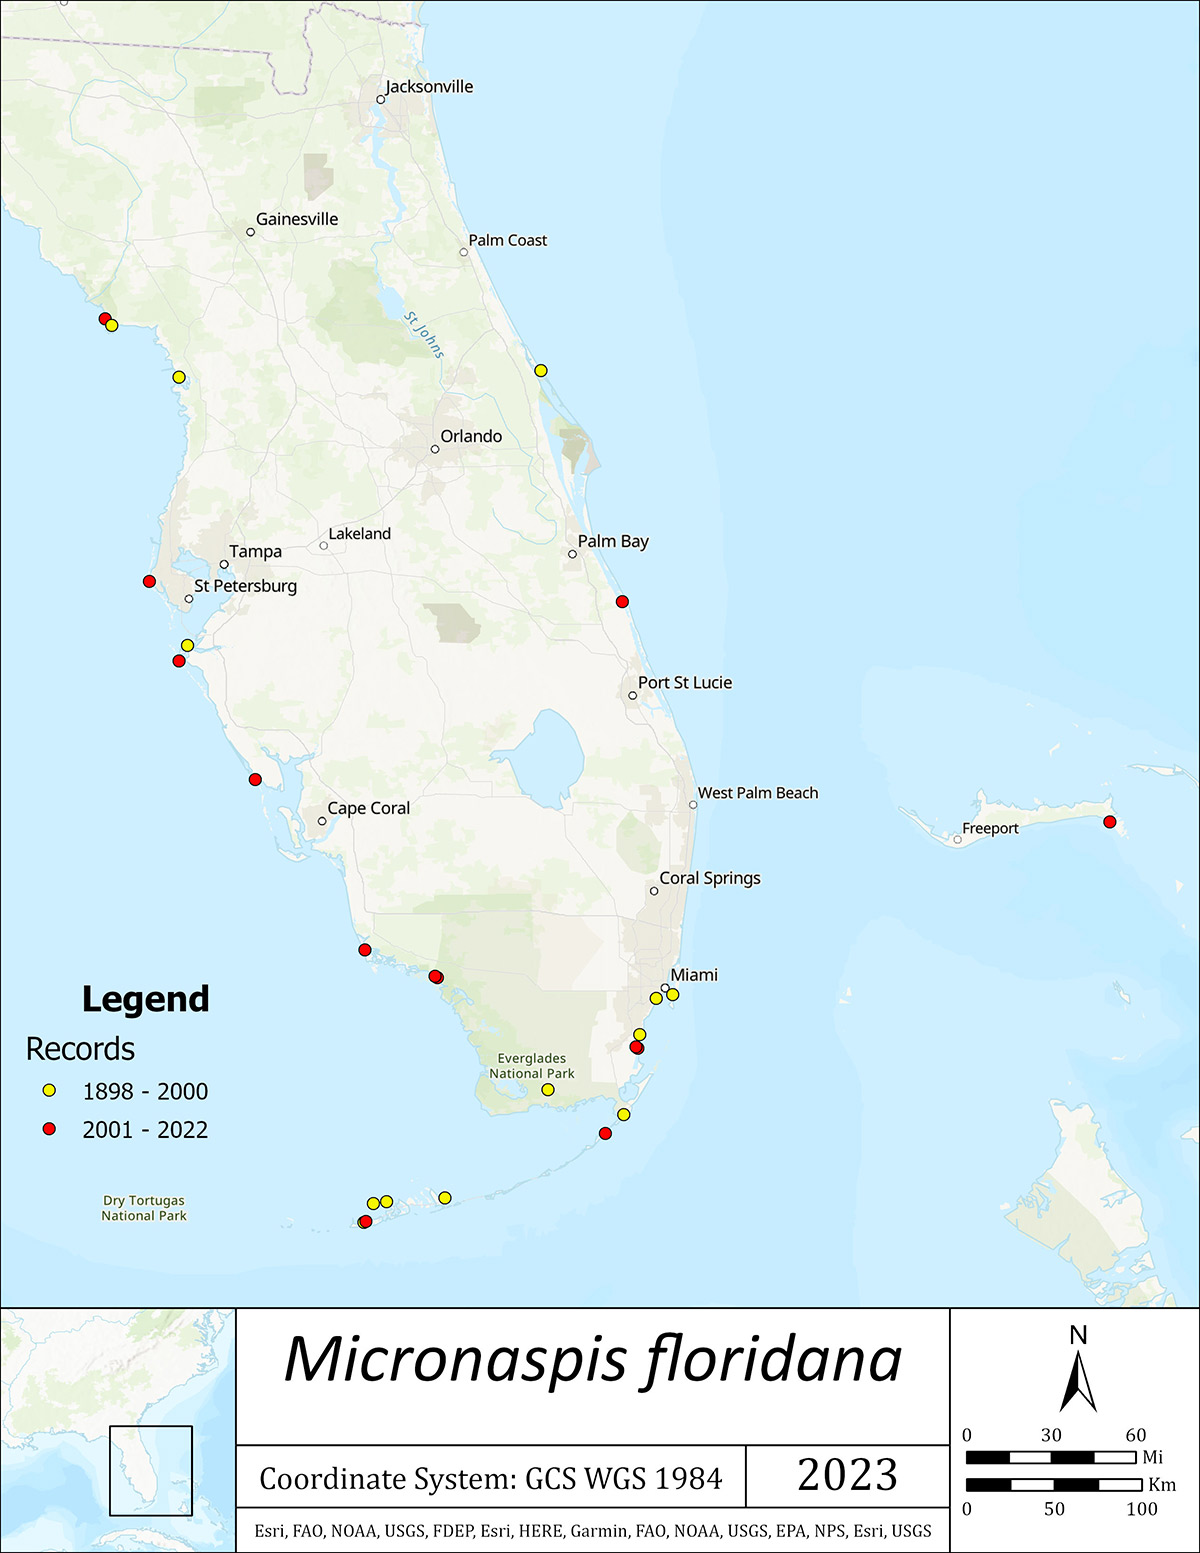 Sites mapped on coastal Florida and the Bahamas